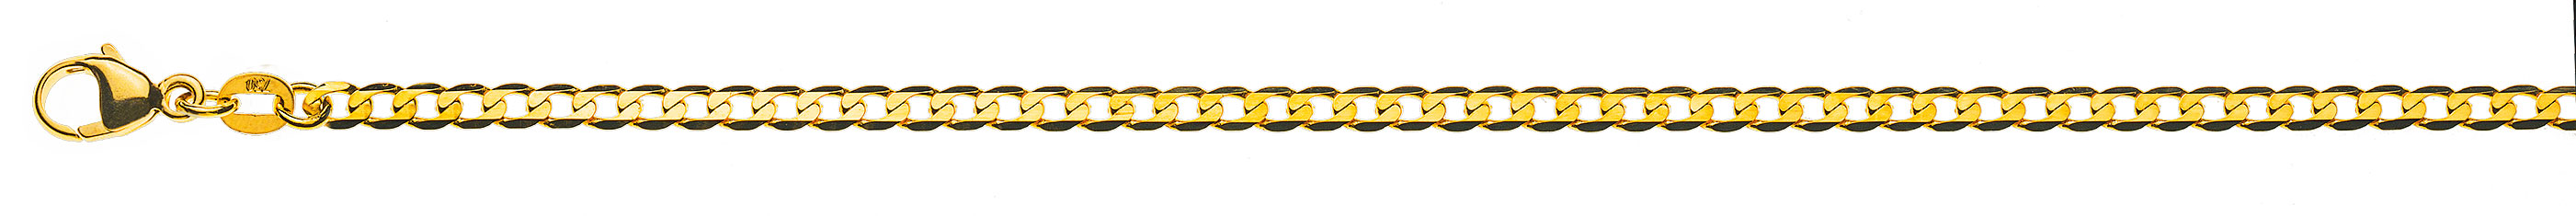 AURONOS Prestige Halskette Gelbgold 18K Panzerkette extraflach diamantiert 45cm 3.1mm